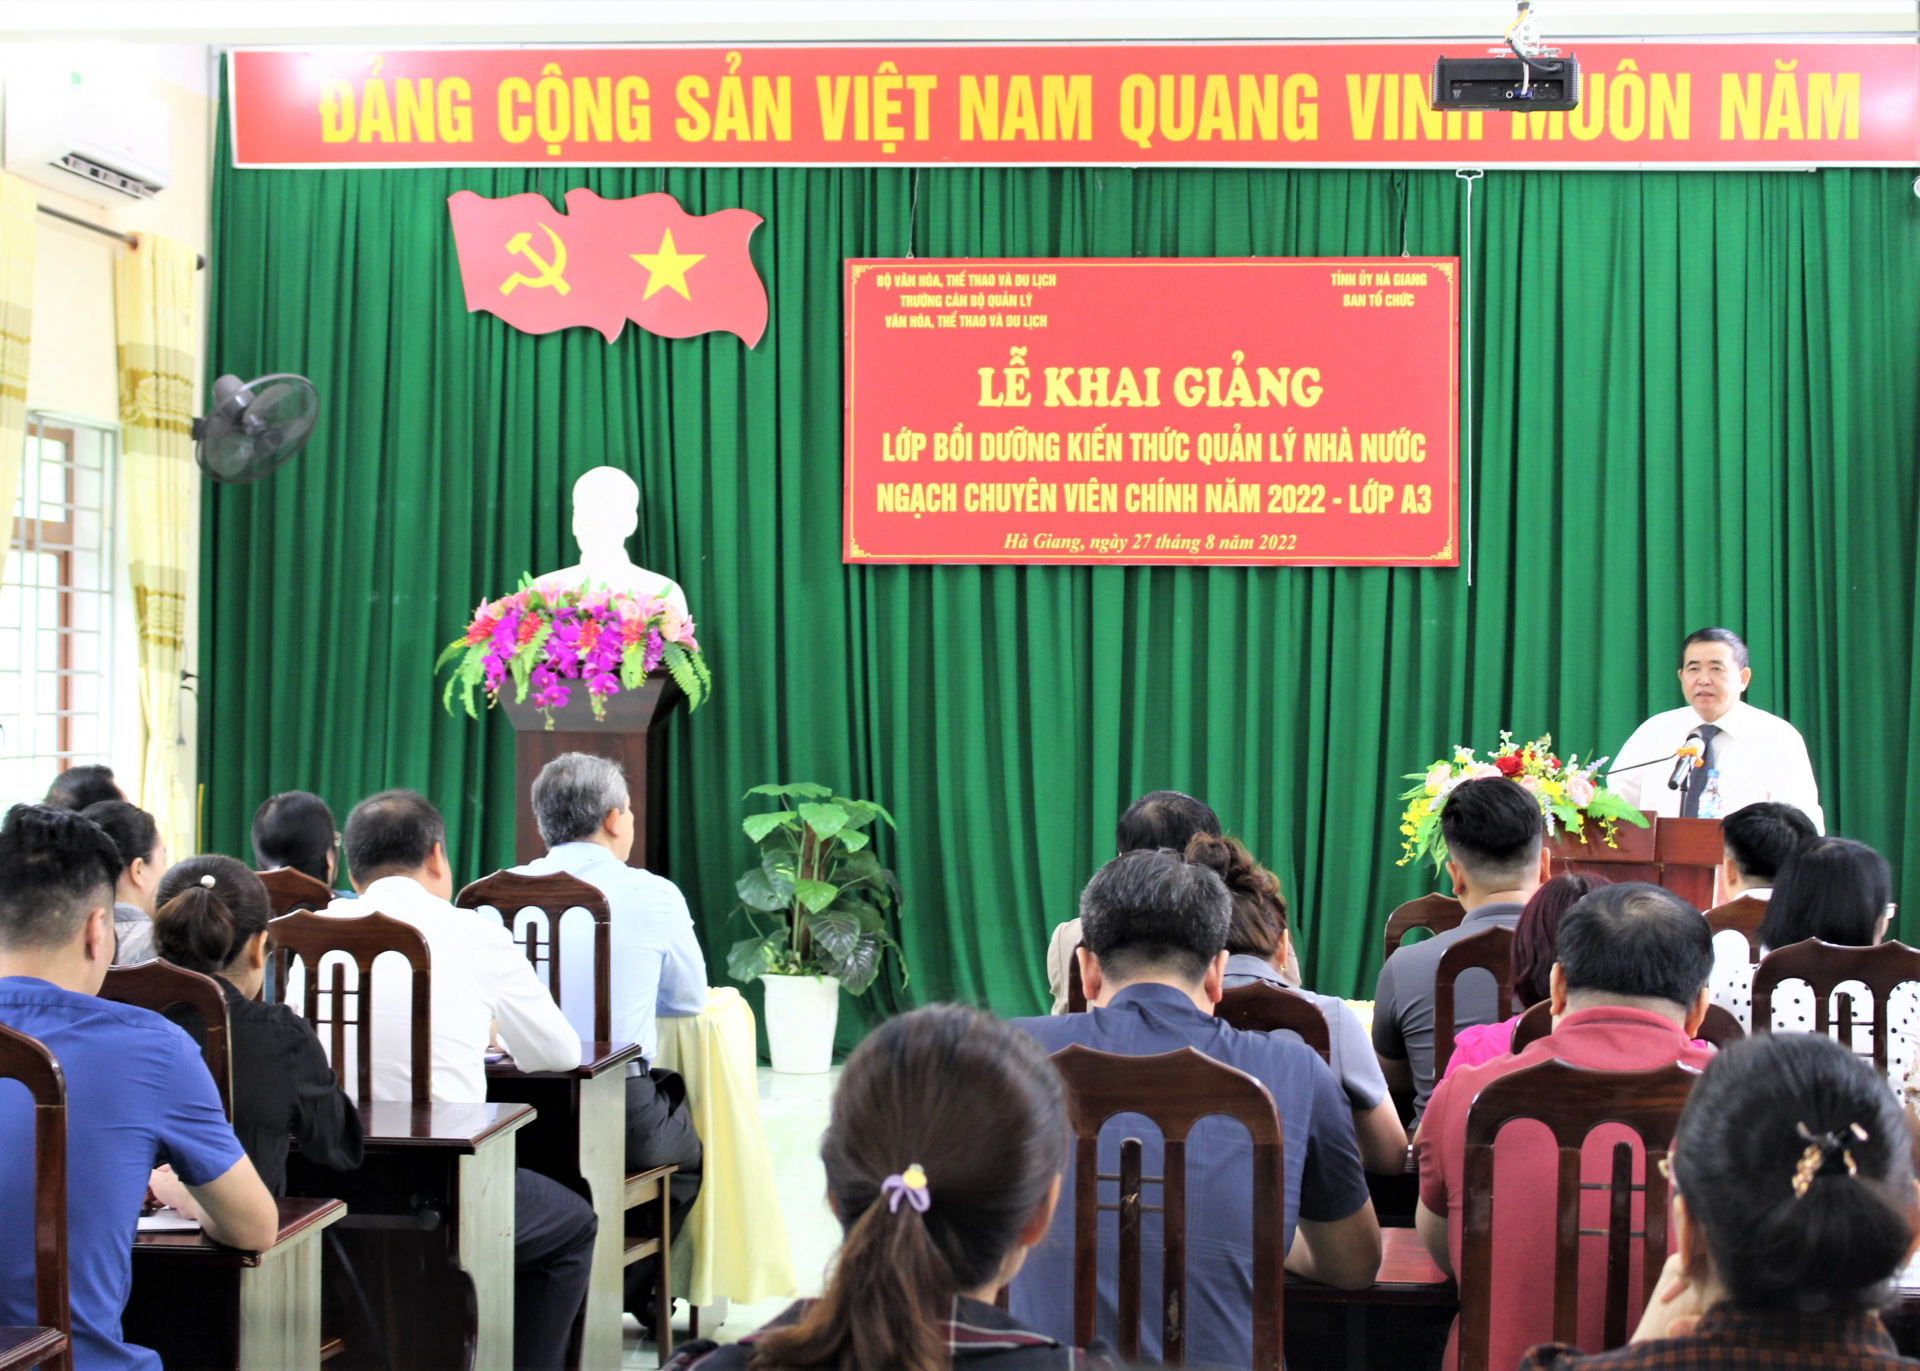 Lãnh đạo Ban Tổ chức Tỉnh ủy phát biểu tại lớp Bồi dưỡng kiến thức quản lý nhà nước ngạch chuyên viên chính.